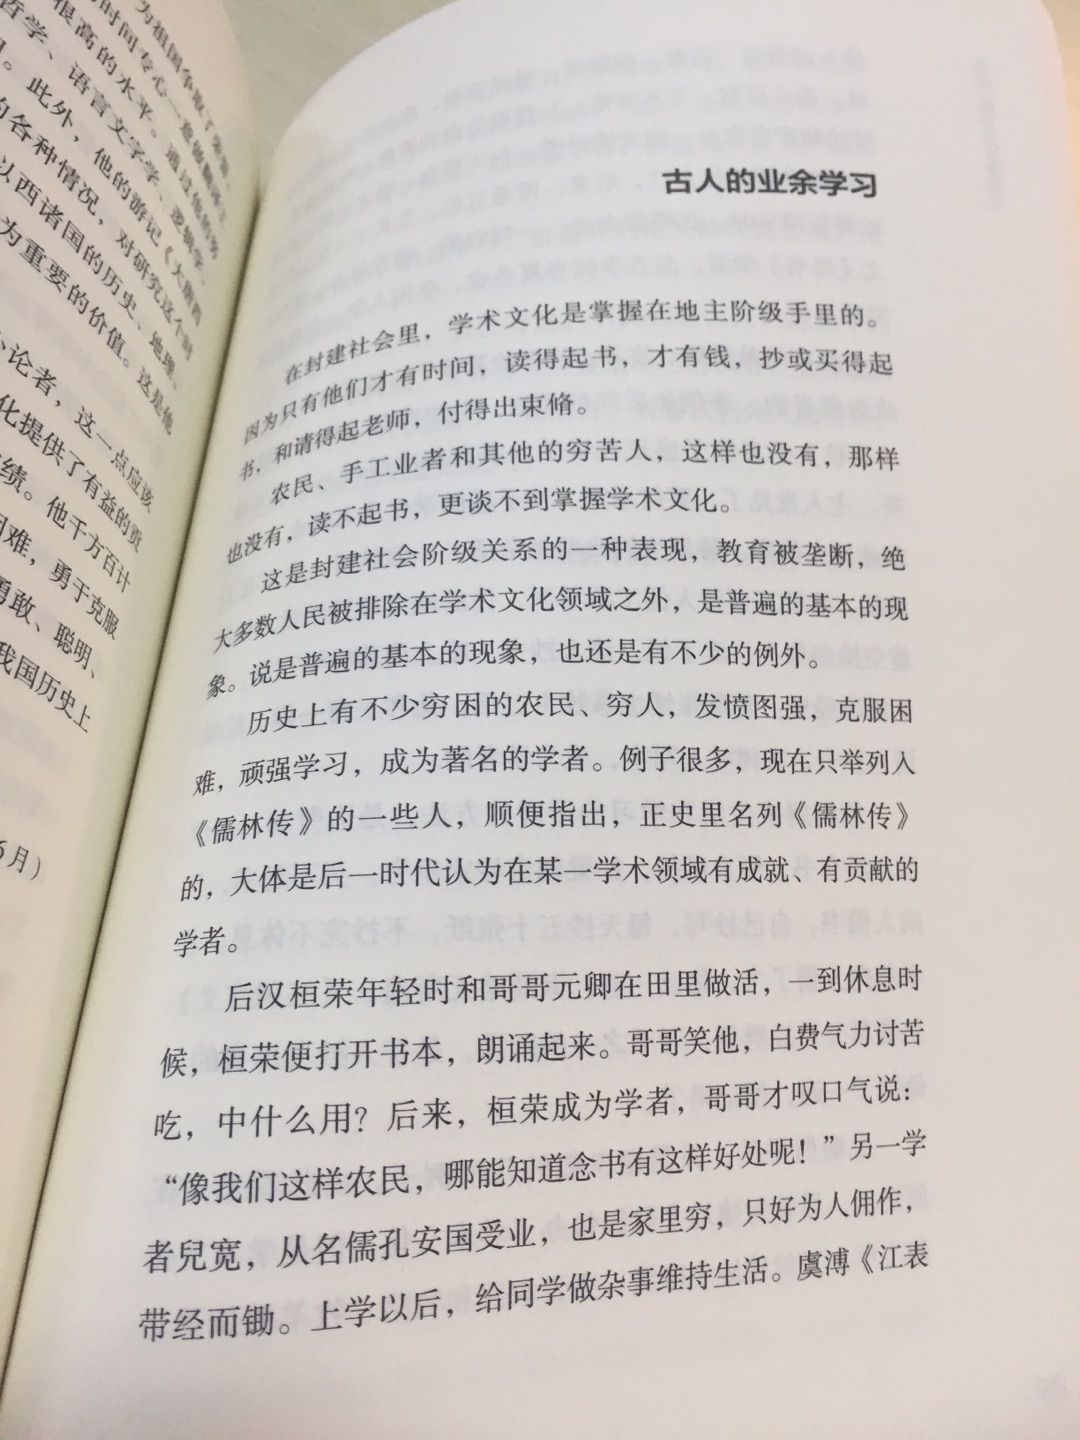 从学历史开始，就知道一个名字——吴晗。终于买到了大师的书。大师严谨的学风和扎实的专业知识让我感受到了真实地传承历史是现今历史学者的使命。